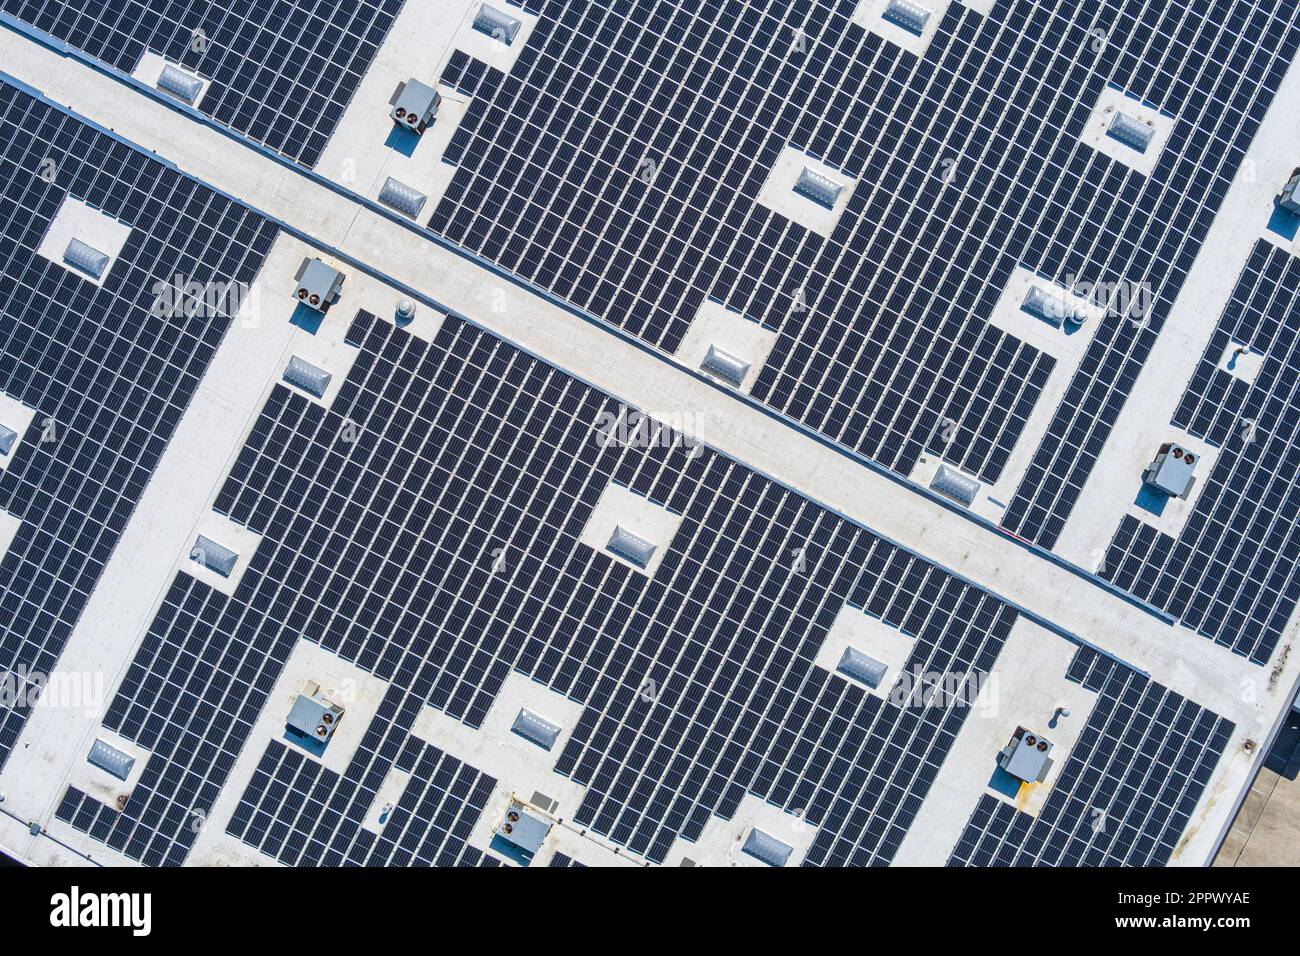 Vista aerea dei pannelli solari sul tetto dell'edificio commerciale, New Jersey USA Foto Stock